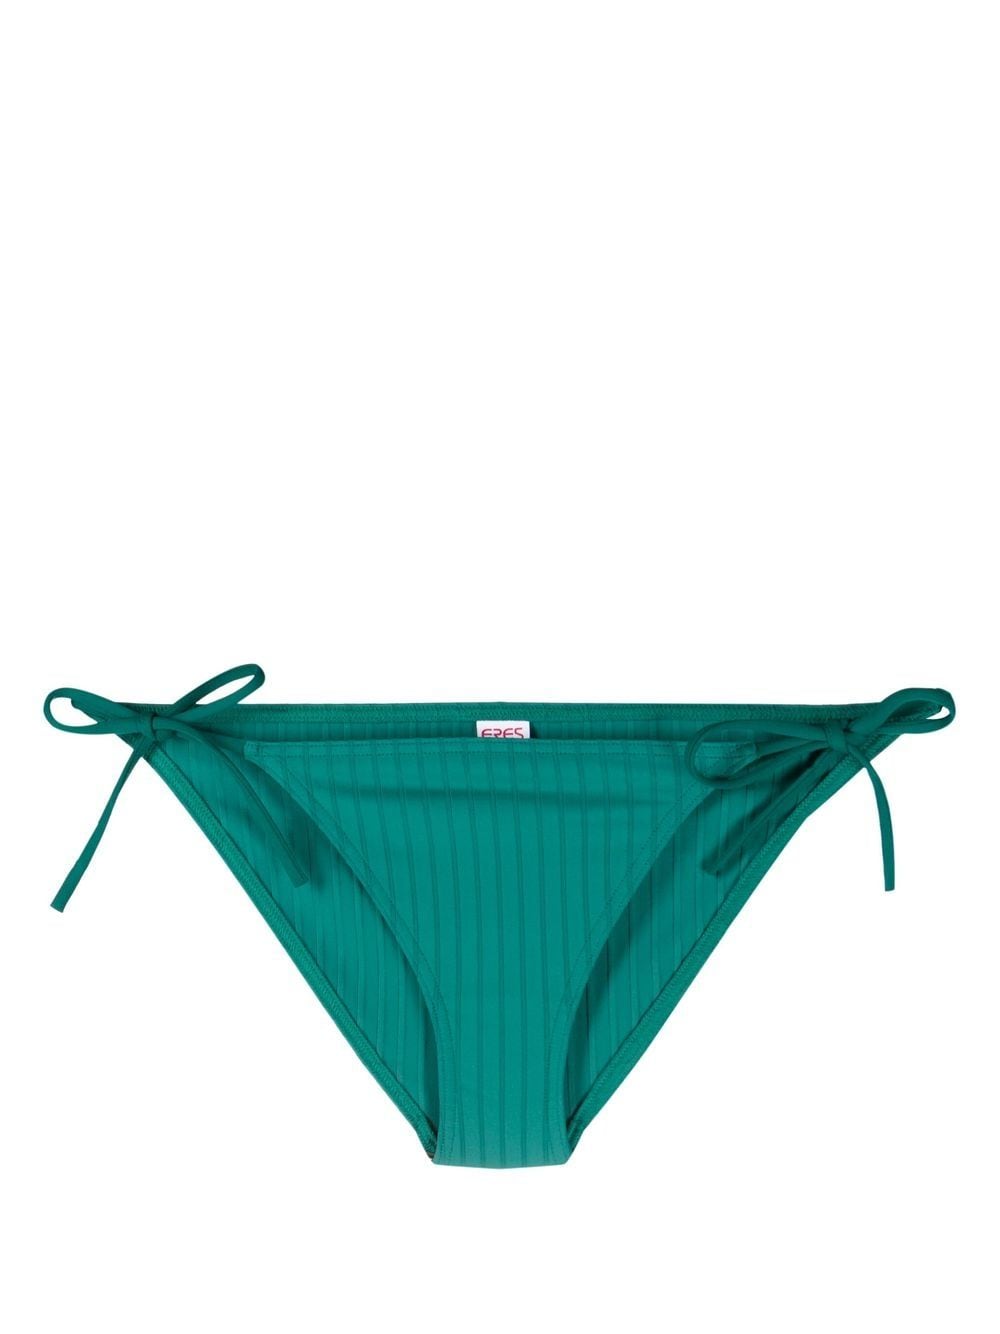 ERES Punch side-tie bikini bottoms - Green von ERES